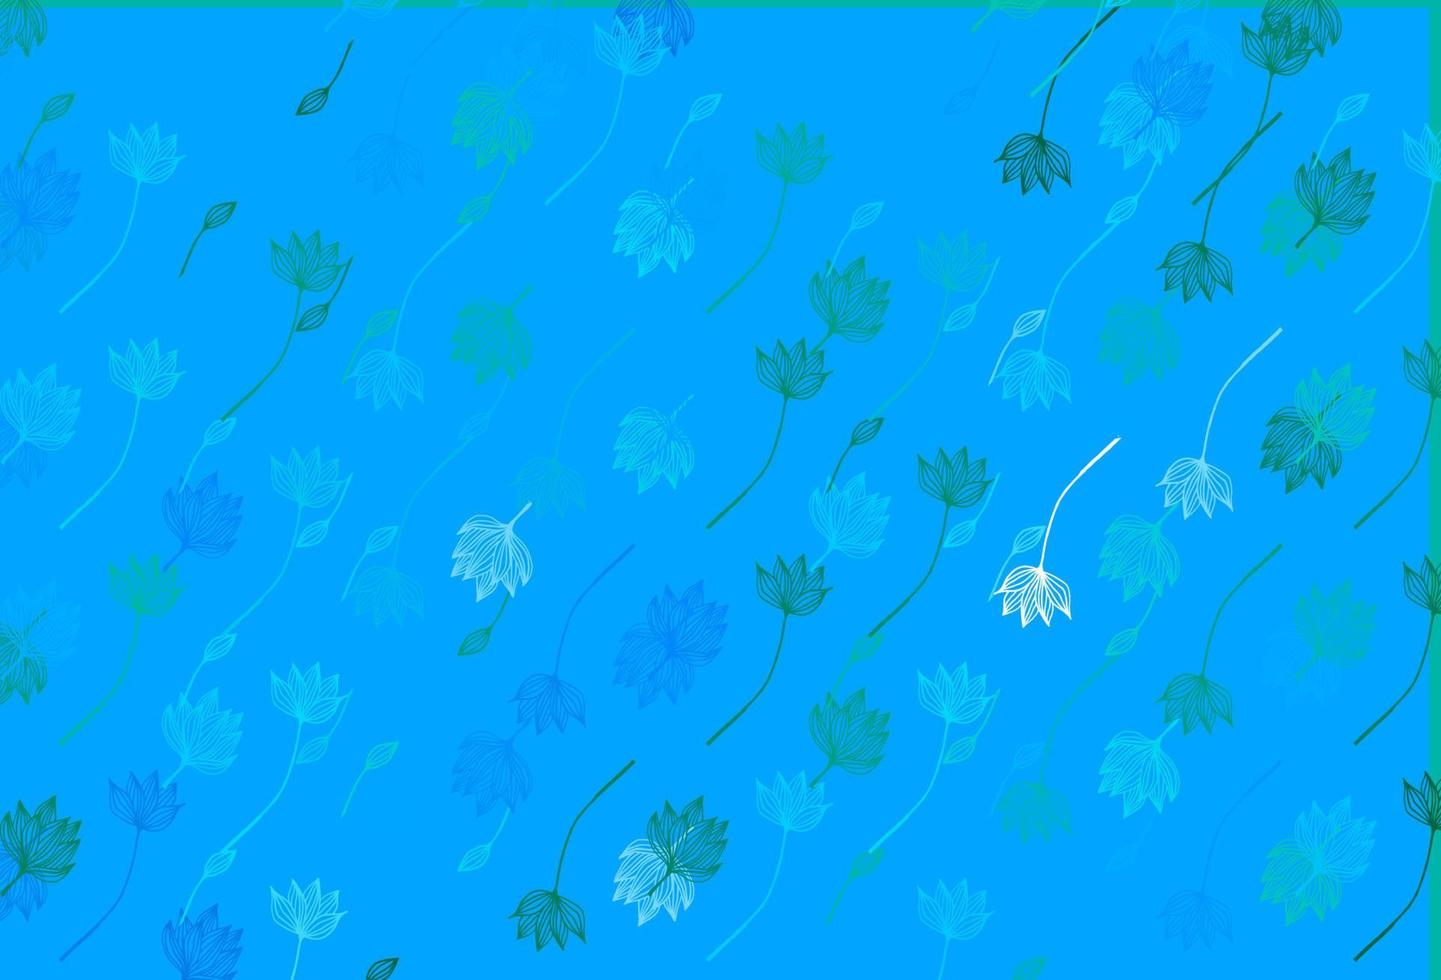 padrão de doodle de vetor azul e verde claro.